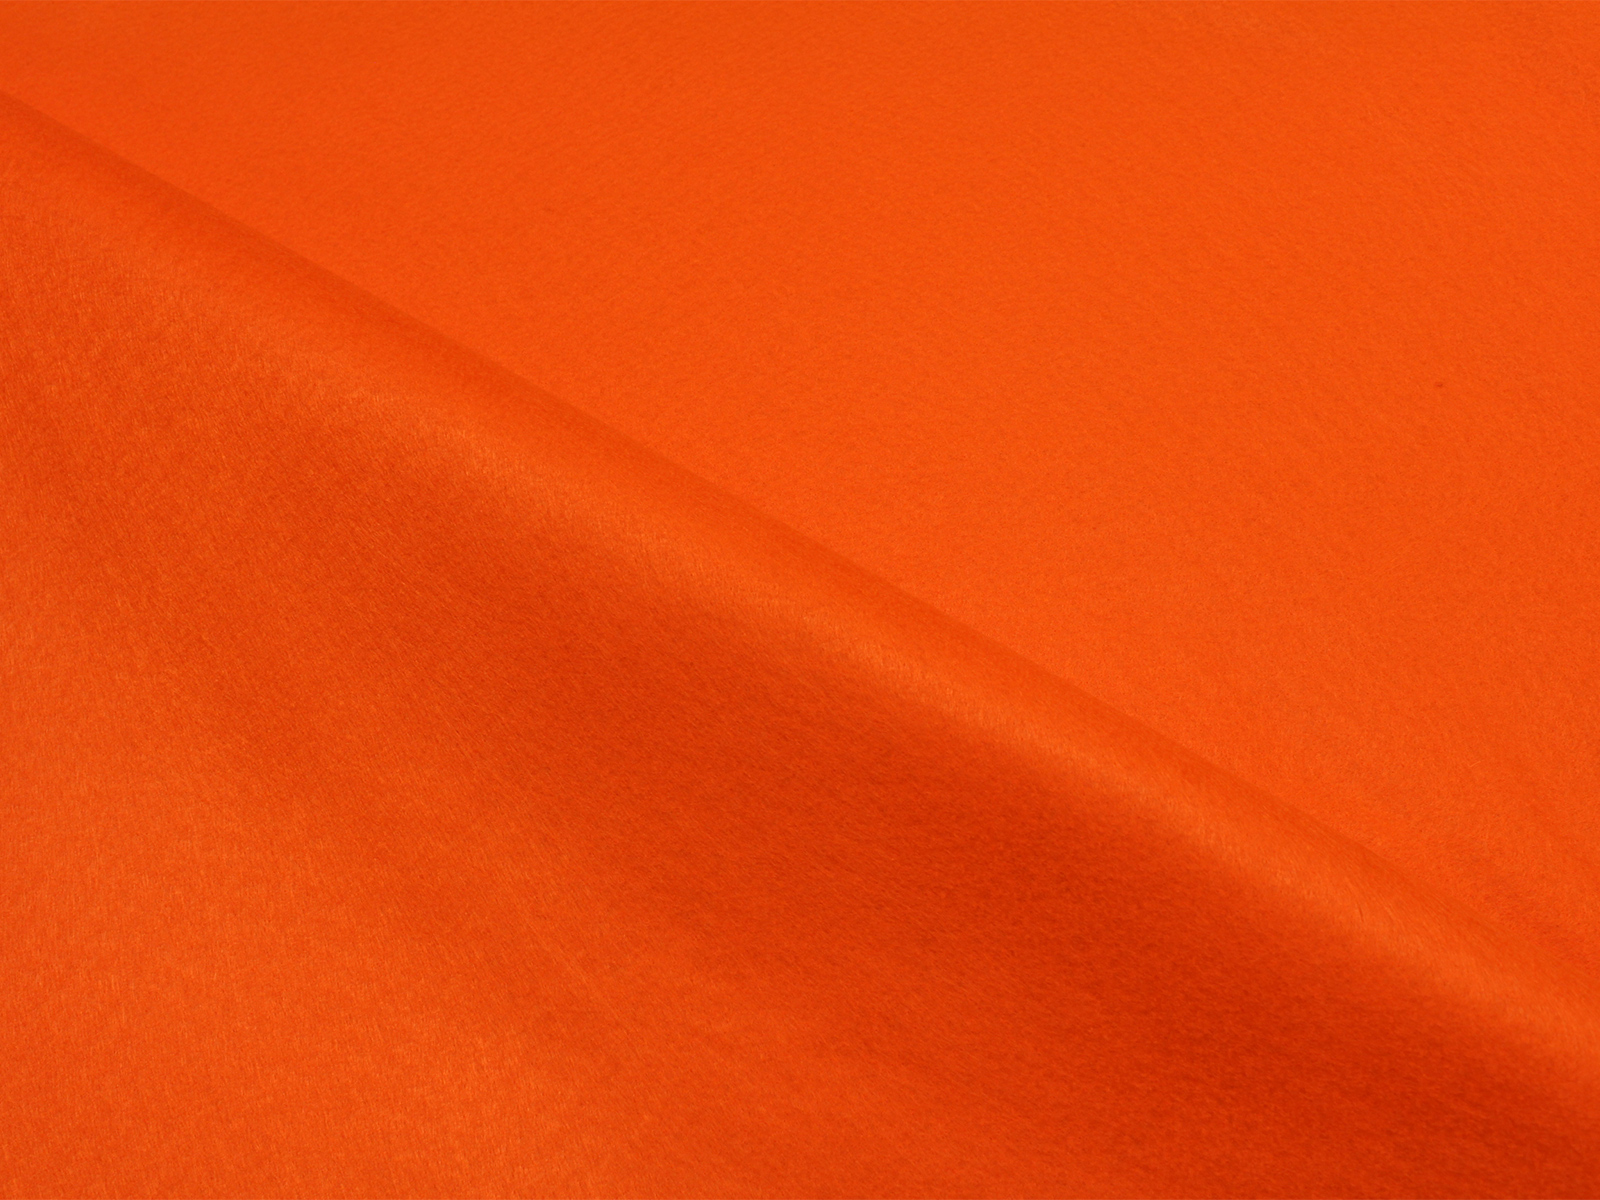 00241 Pannolenci Arancione   ROTOLINO da 1 mt